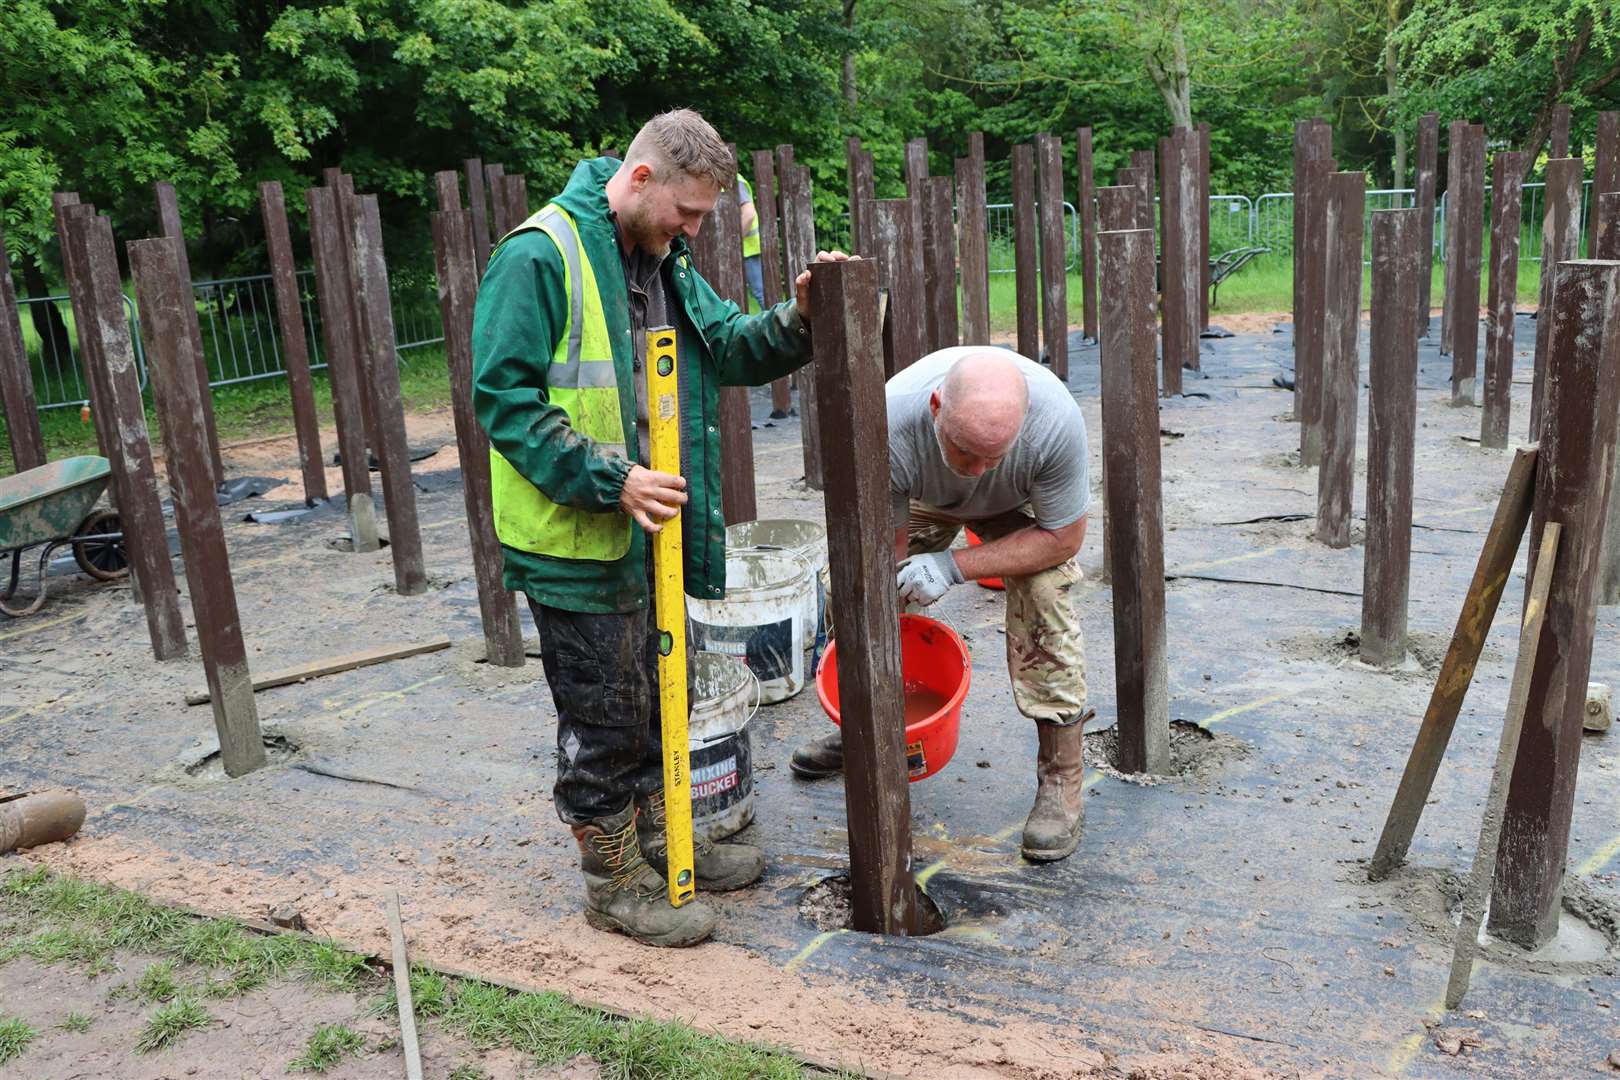 Workers refurbish the wooden posts at the memorial (National Memorial Arboretum/PA)